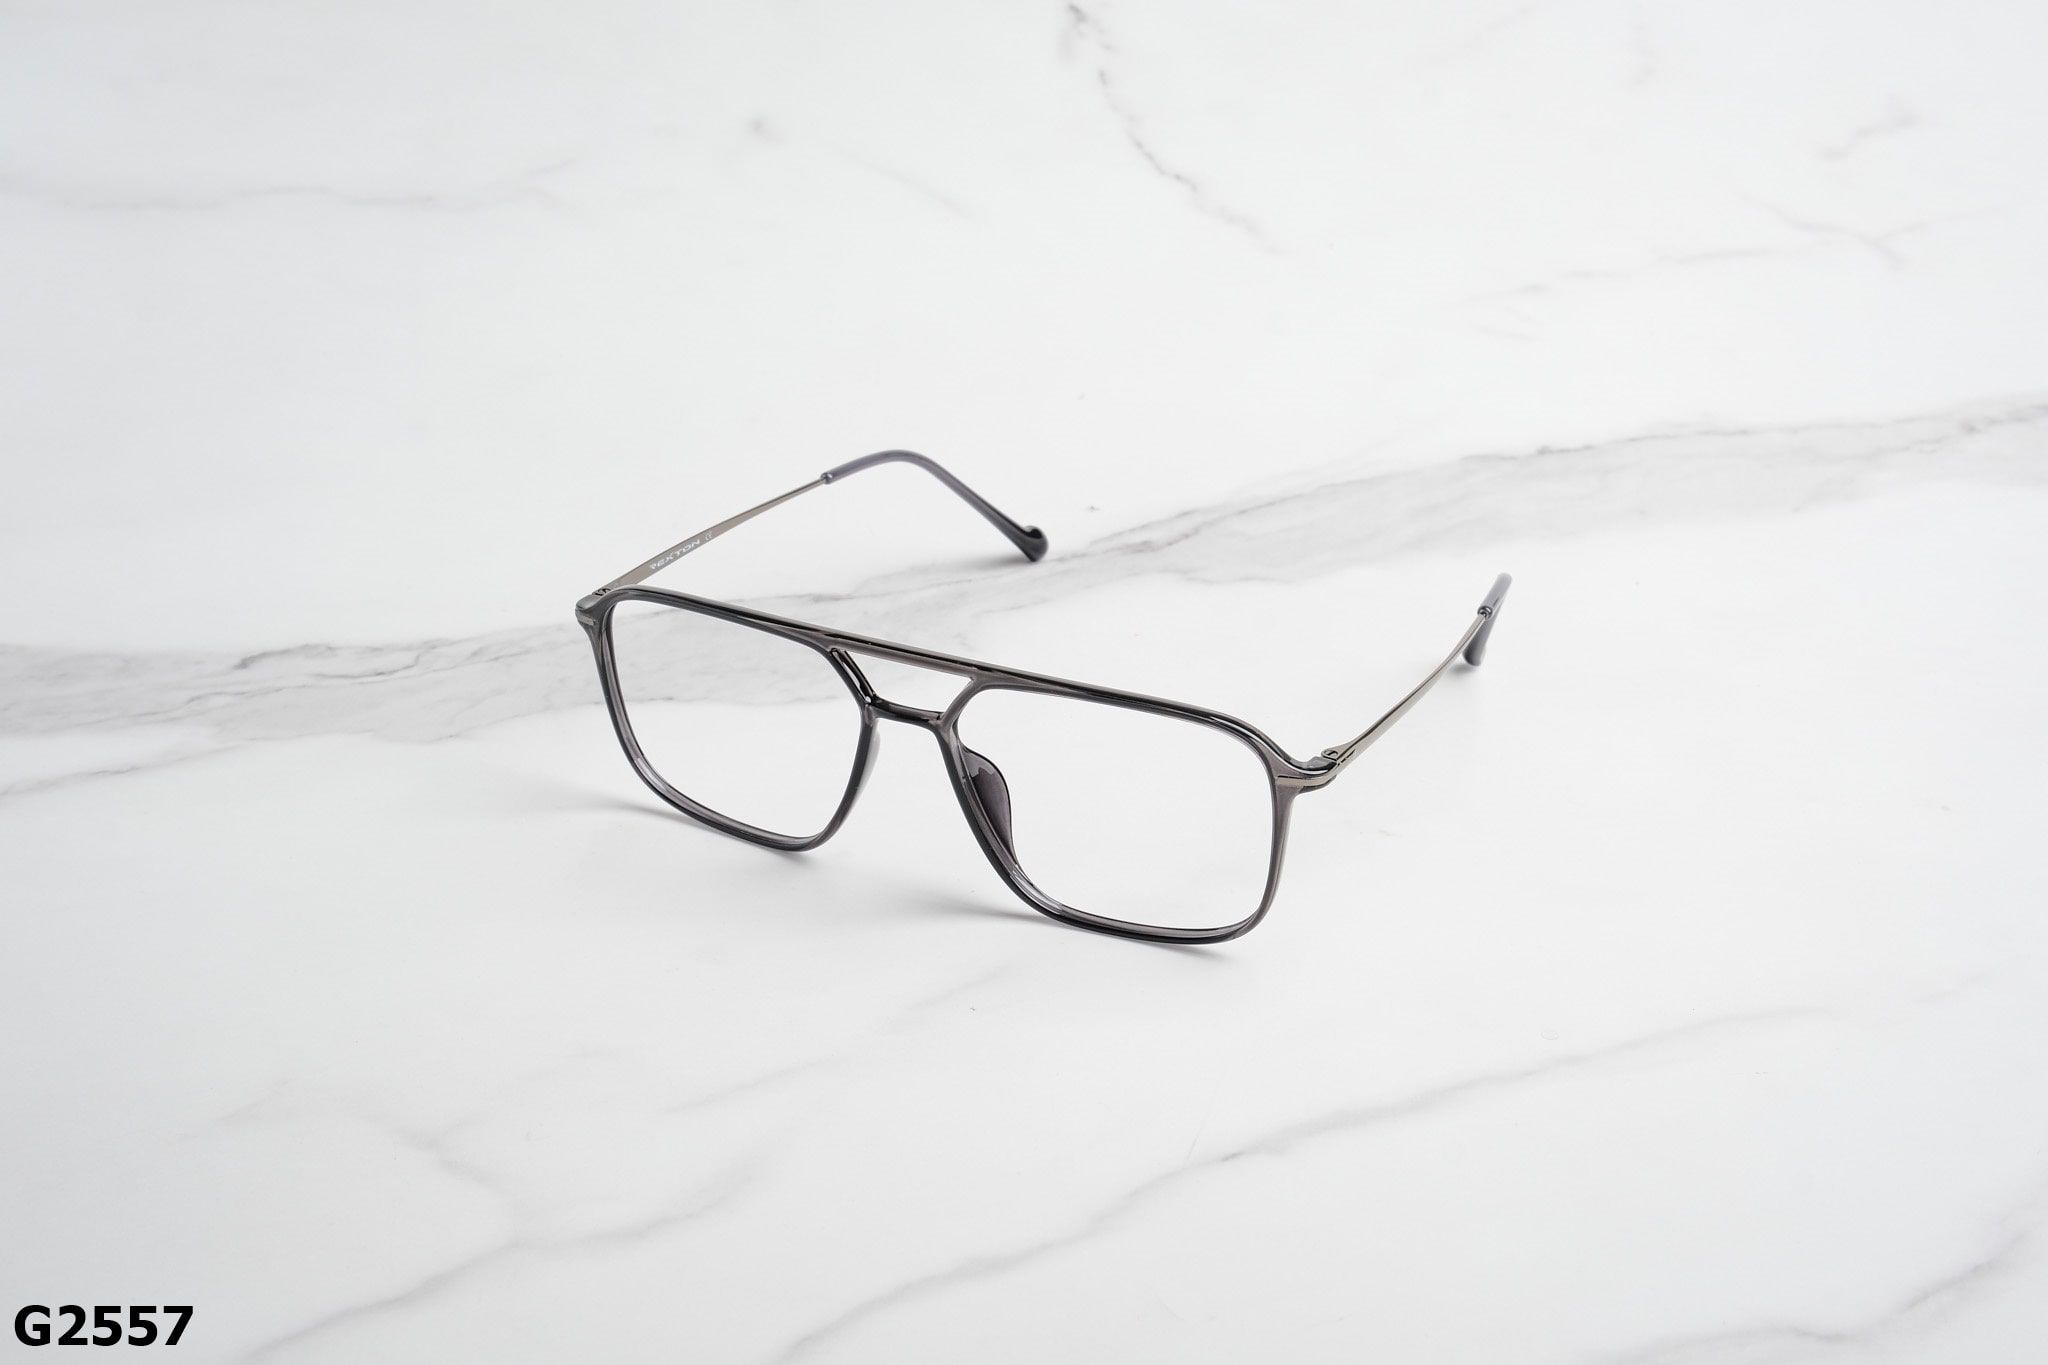  Rex-ton Eyewear - Glasses - G2557 